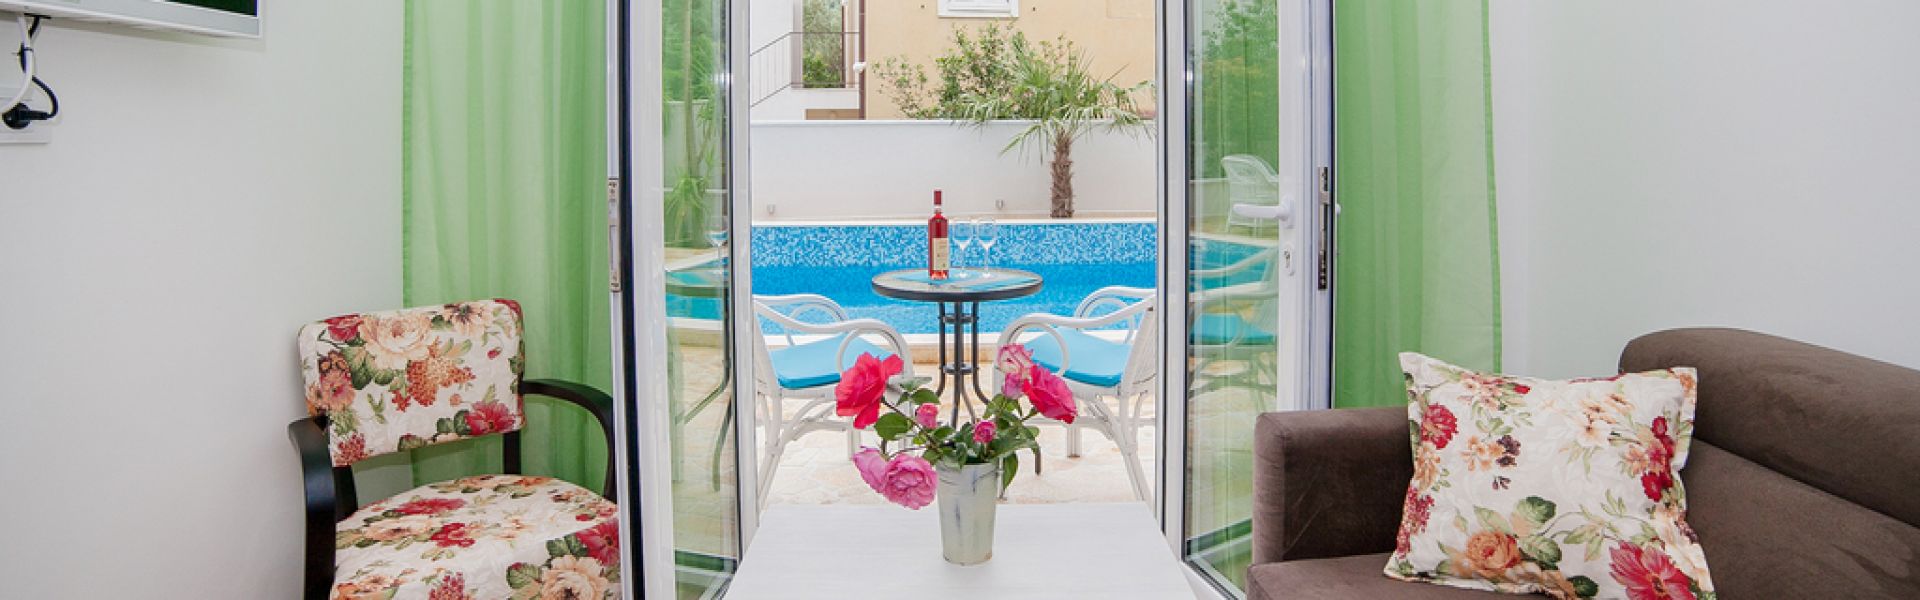 Jednosobni Apartman sa terasom i pogledom na bazen